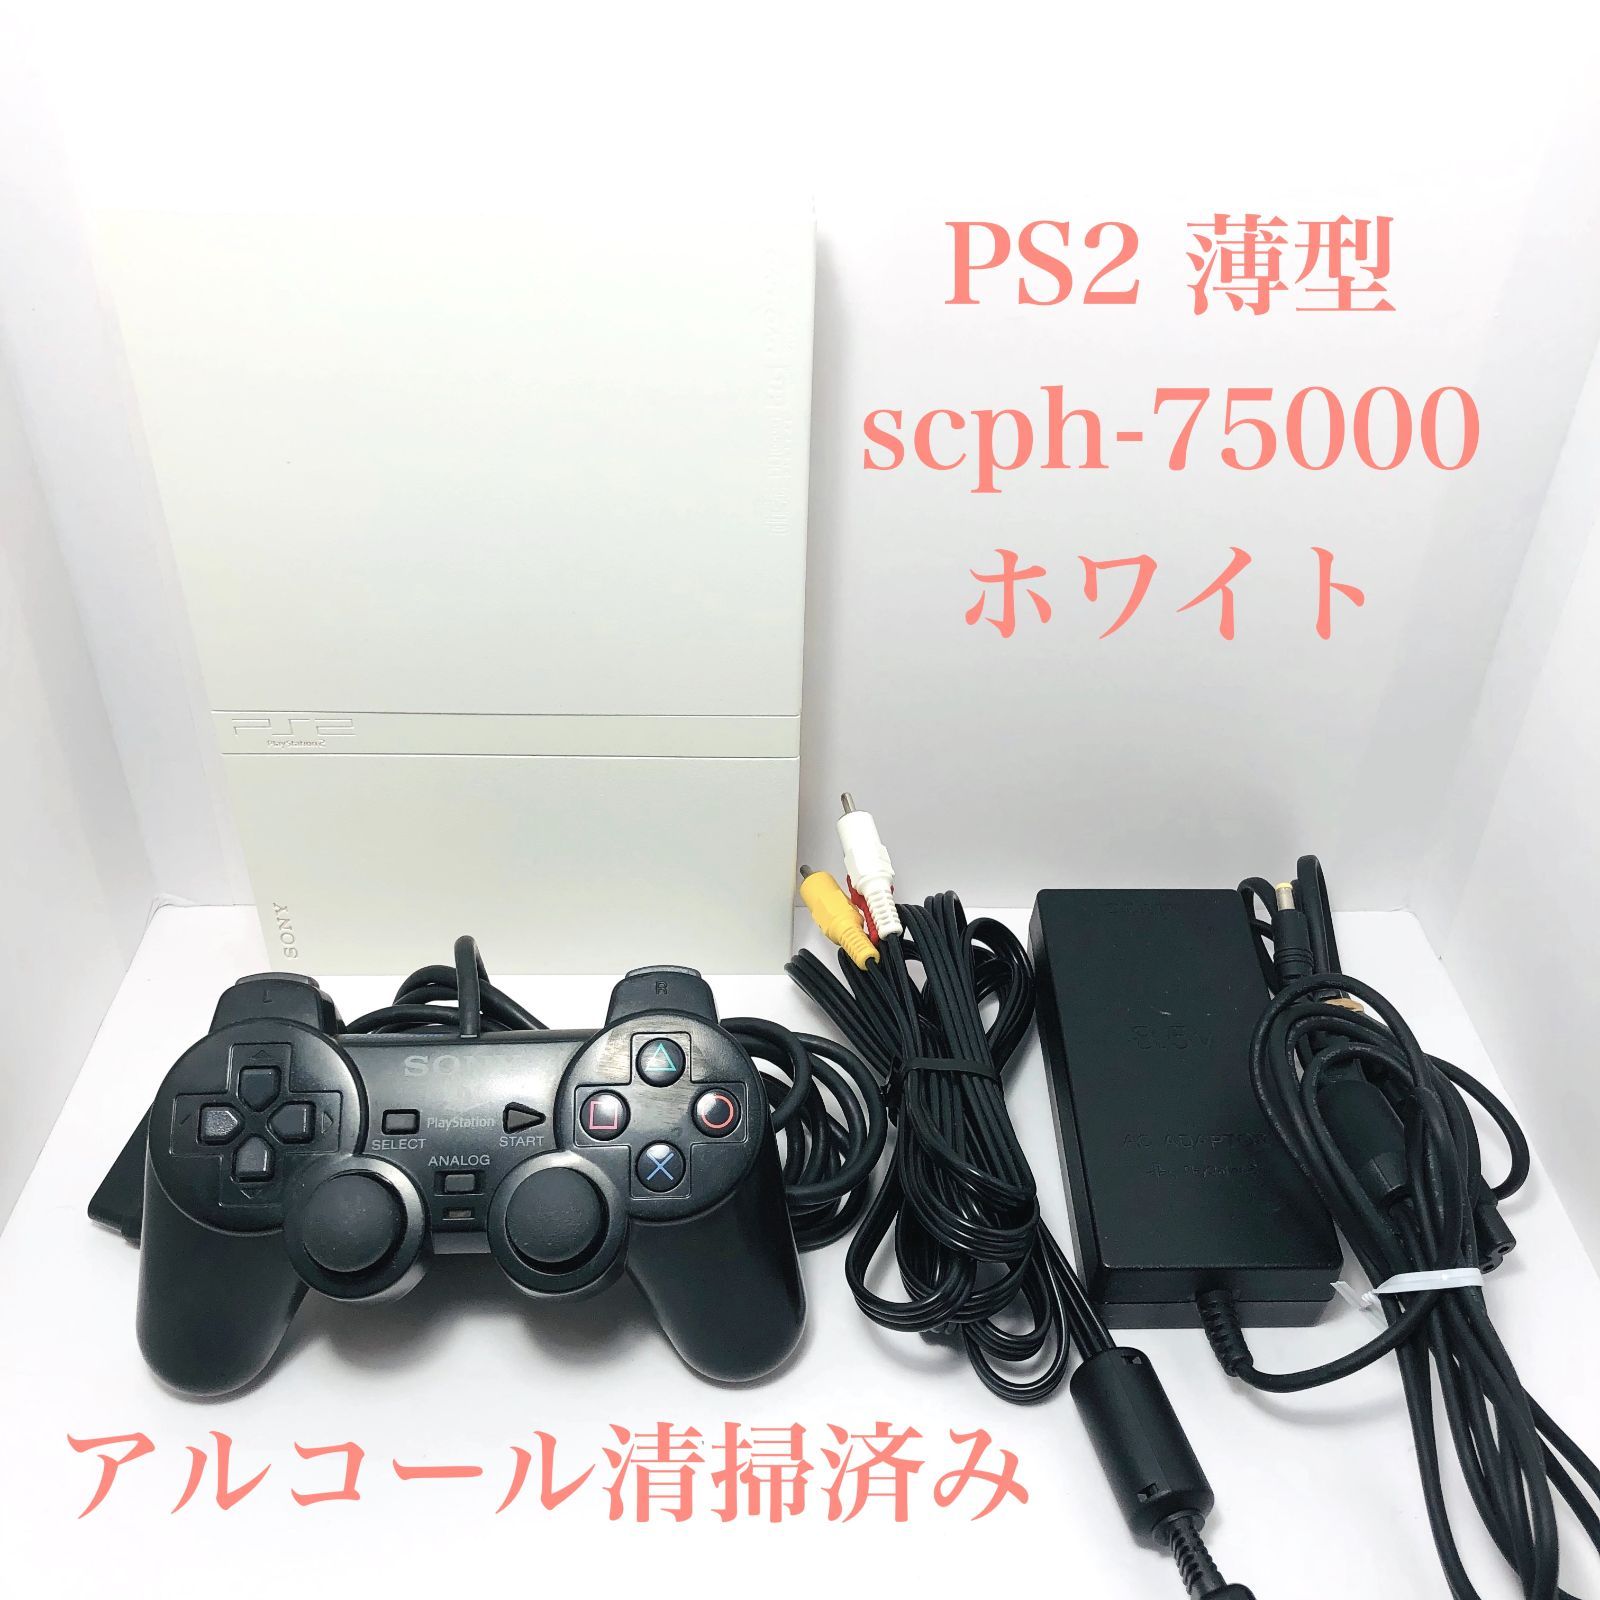 すぐ遊べるセット】PS2 PlayStation2 SCPH-75000 CW - メルカリ